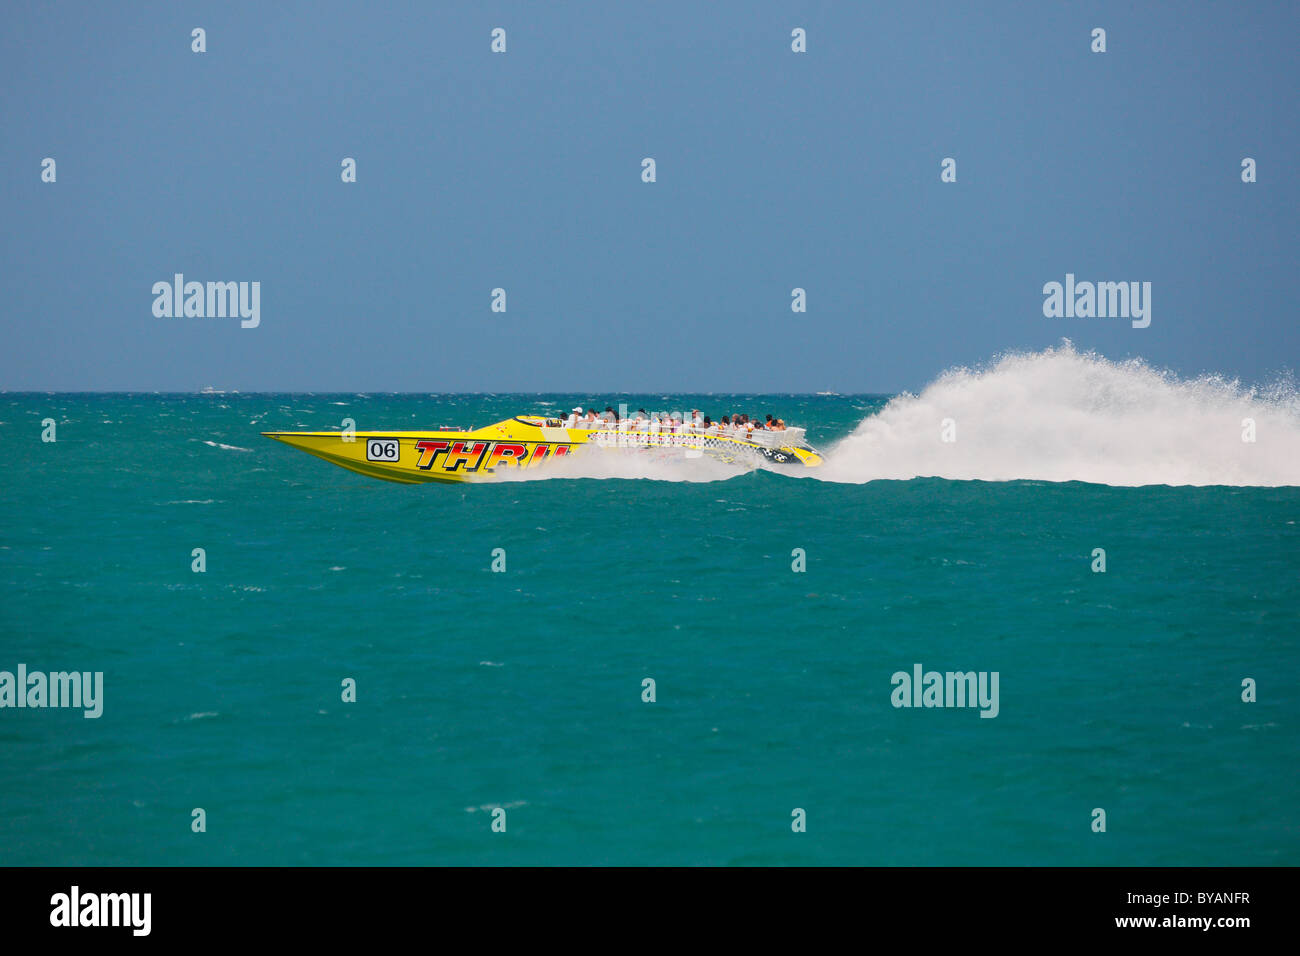 Tourists enjoy on speedboat ride in Miami Stock Photo